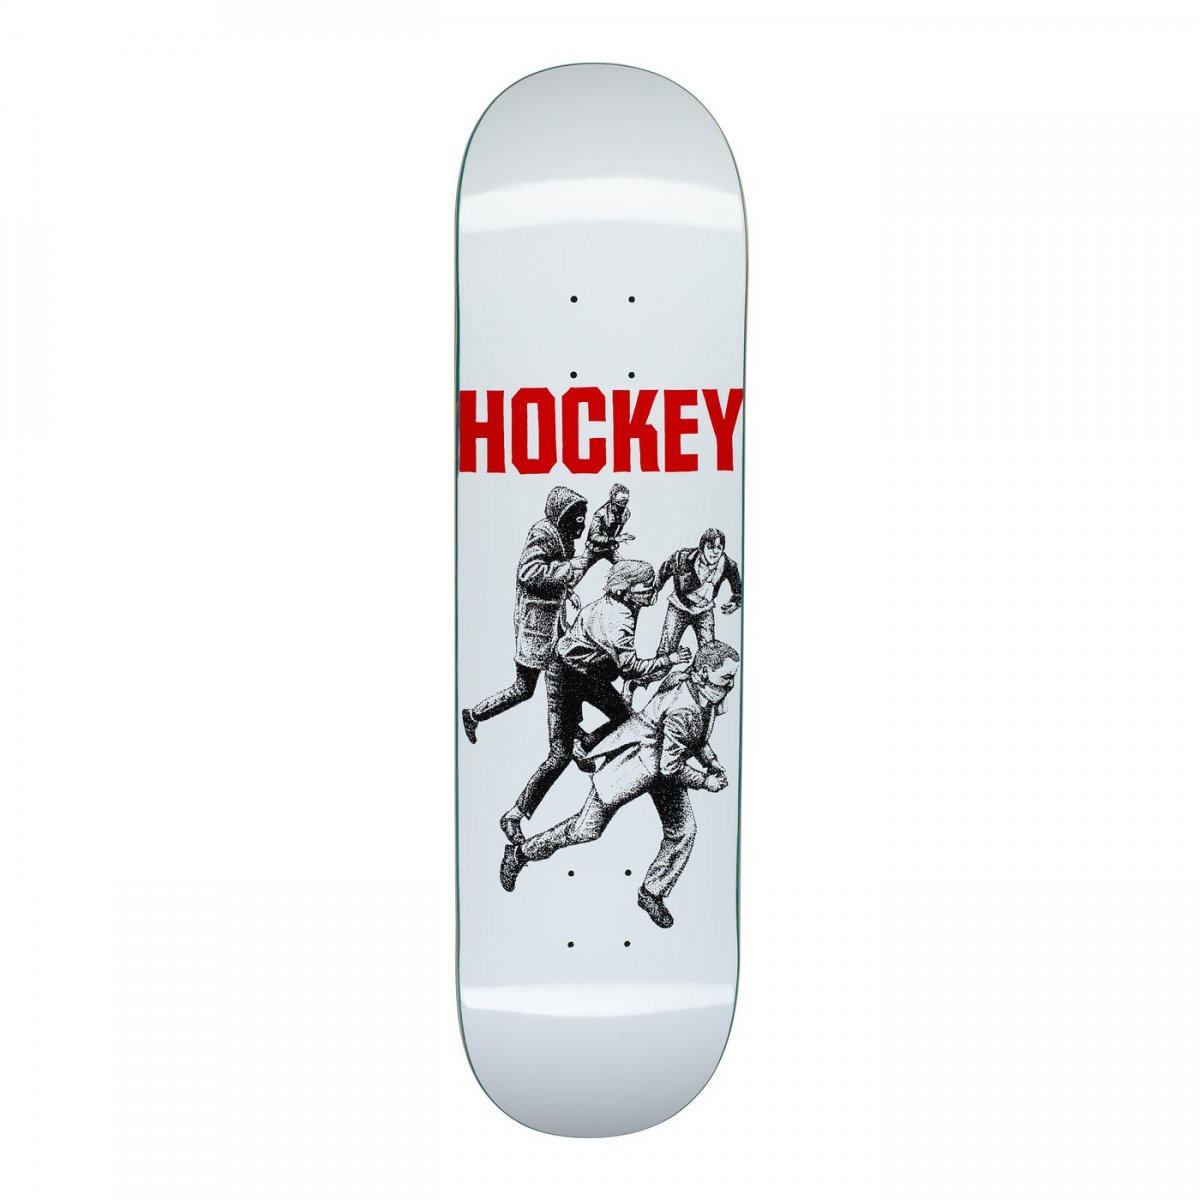 HOCKEY SKATEBOARDS(ホッケー・スケートボード) |HOCKEY SKATEBOARD 